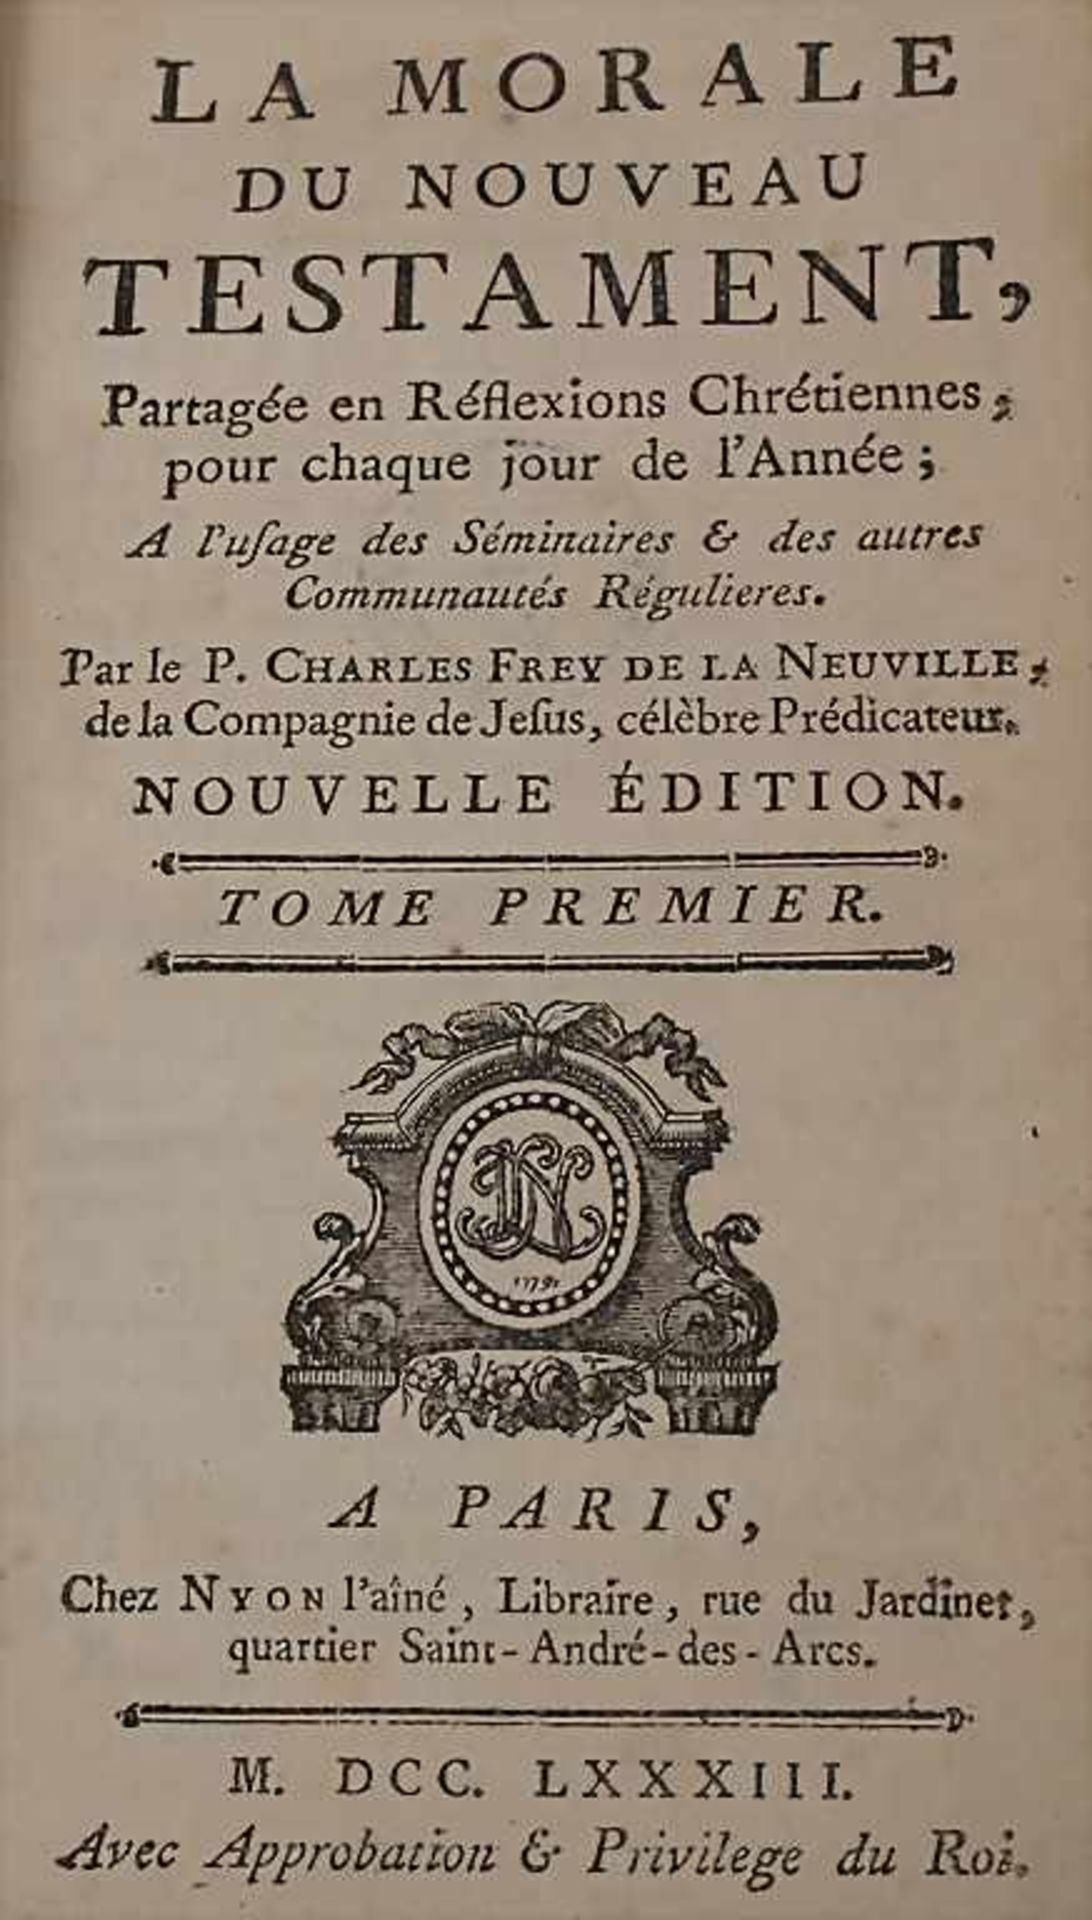 Frey de la Neuville, Charles: La moral de Nouveau Téstament - Image 2 of 2